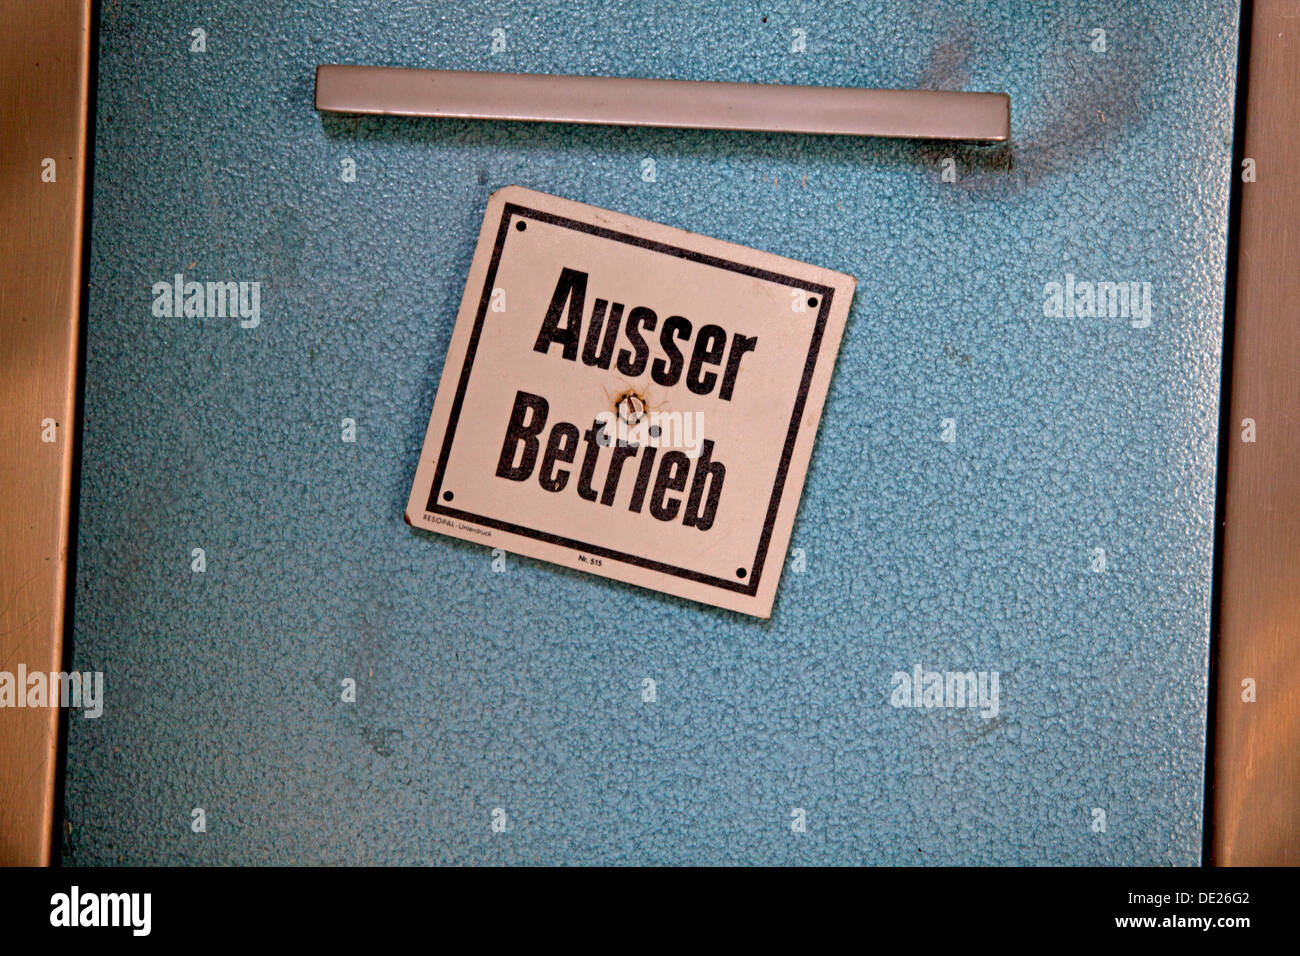 Unidad de recogida de basuras de mostrar el mensaje 'Ausser Betrieb" alemán para "fuera de acción" Foto de stock